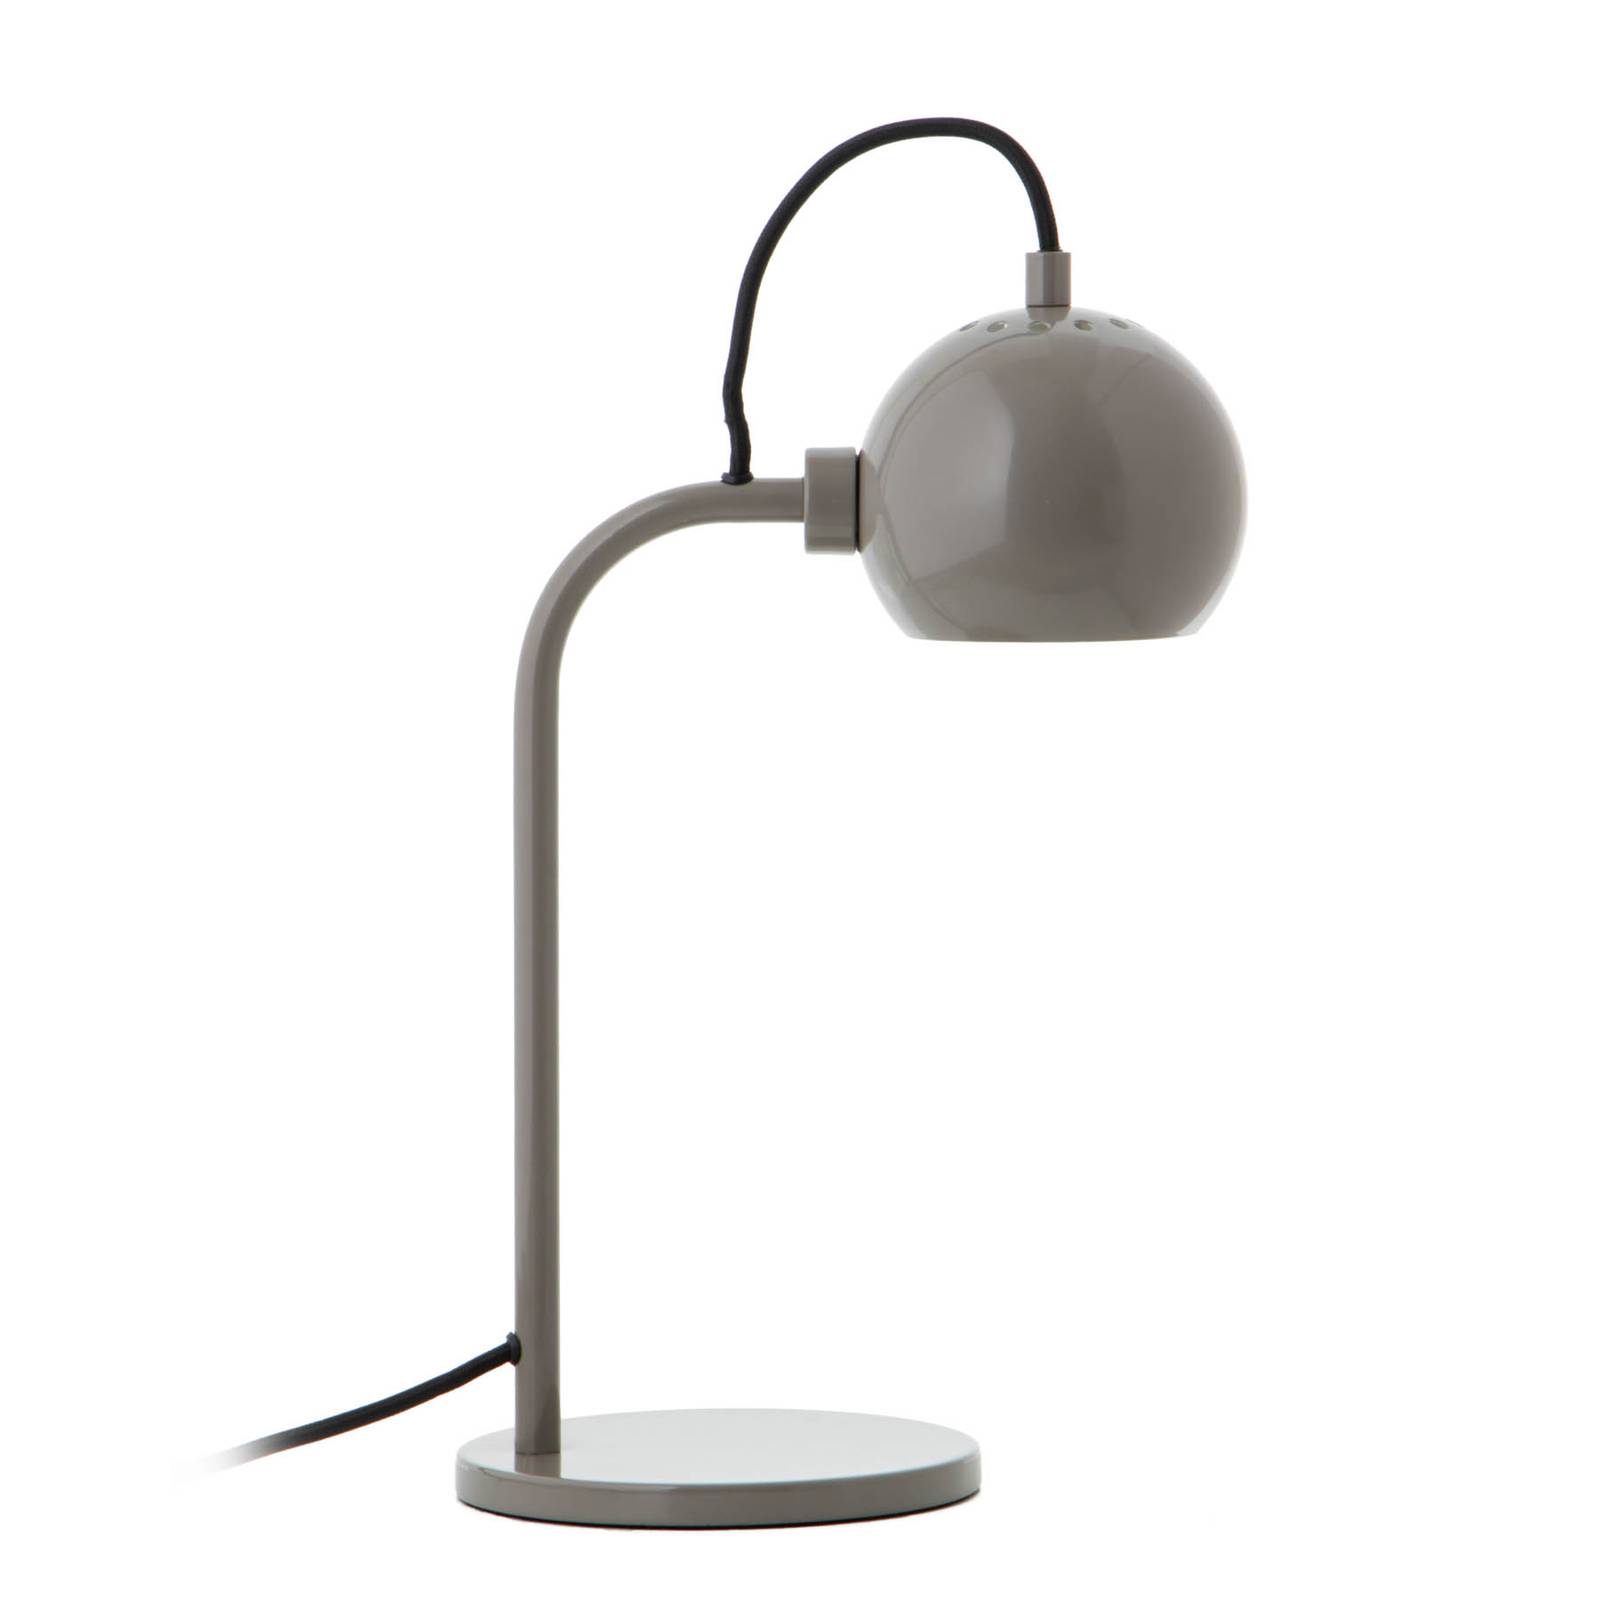 Image of FRANDSEN Ball Single lampe à poser, gris foncé 5702410447677